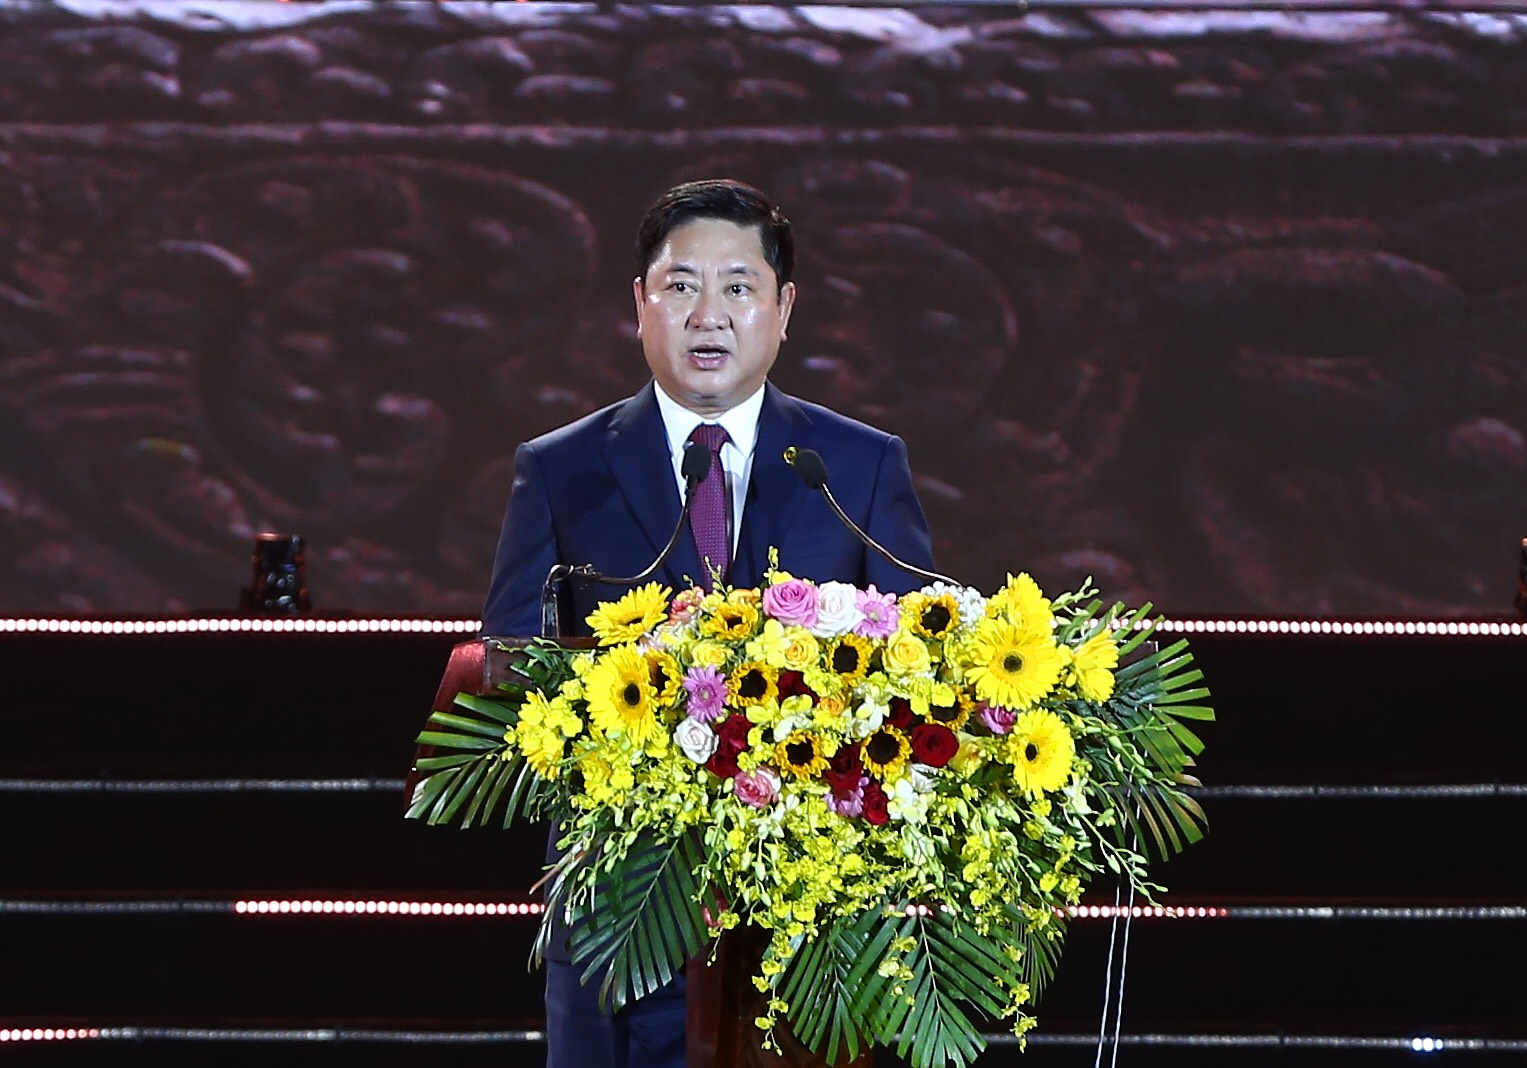 Ông Trần Quốc Nam, Phó Bí thư Tỉnh ủy, Chủ tịch UBND tỉnh Ninh Thuận phát biểu tại buổi lễ. Ảnh: M.H.